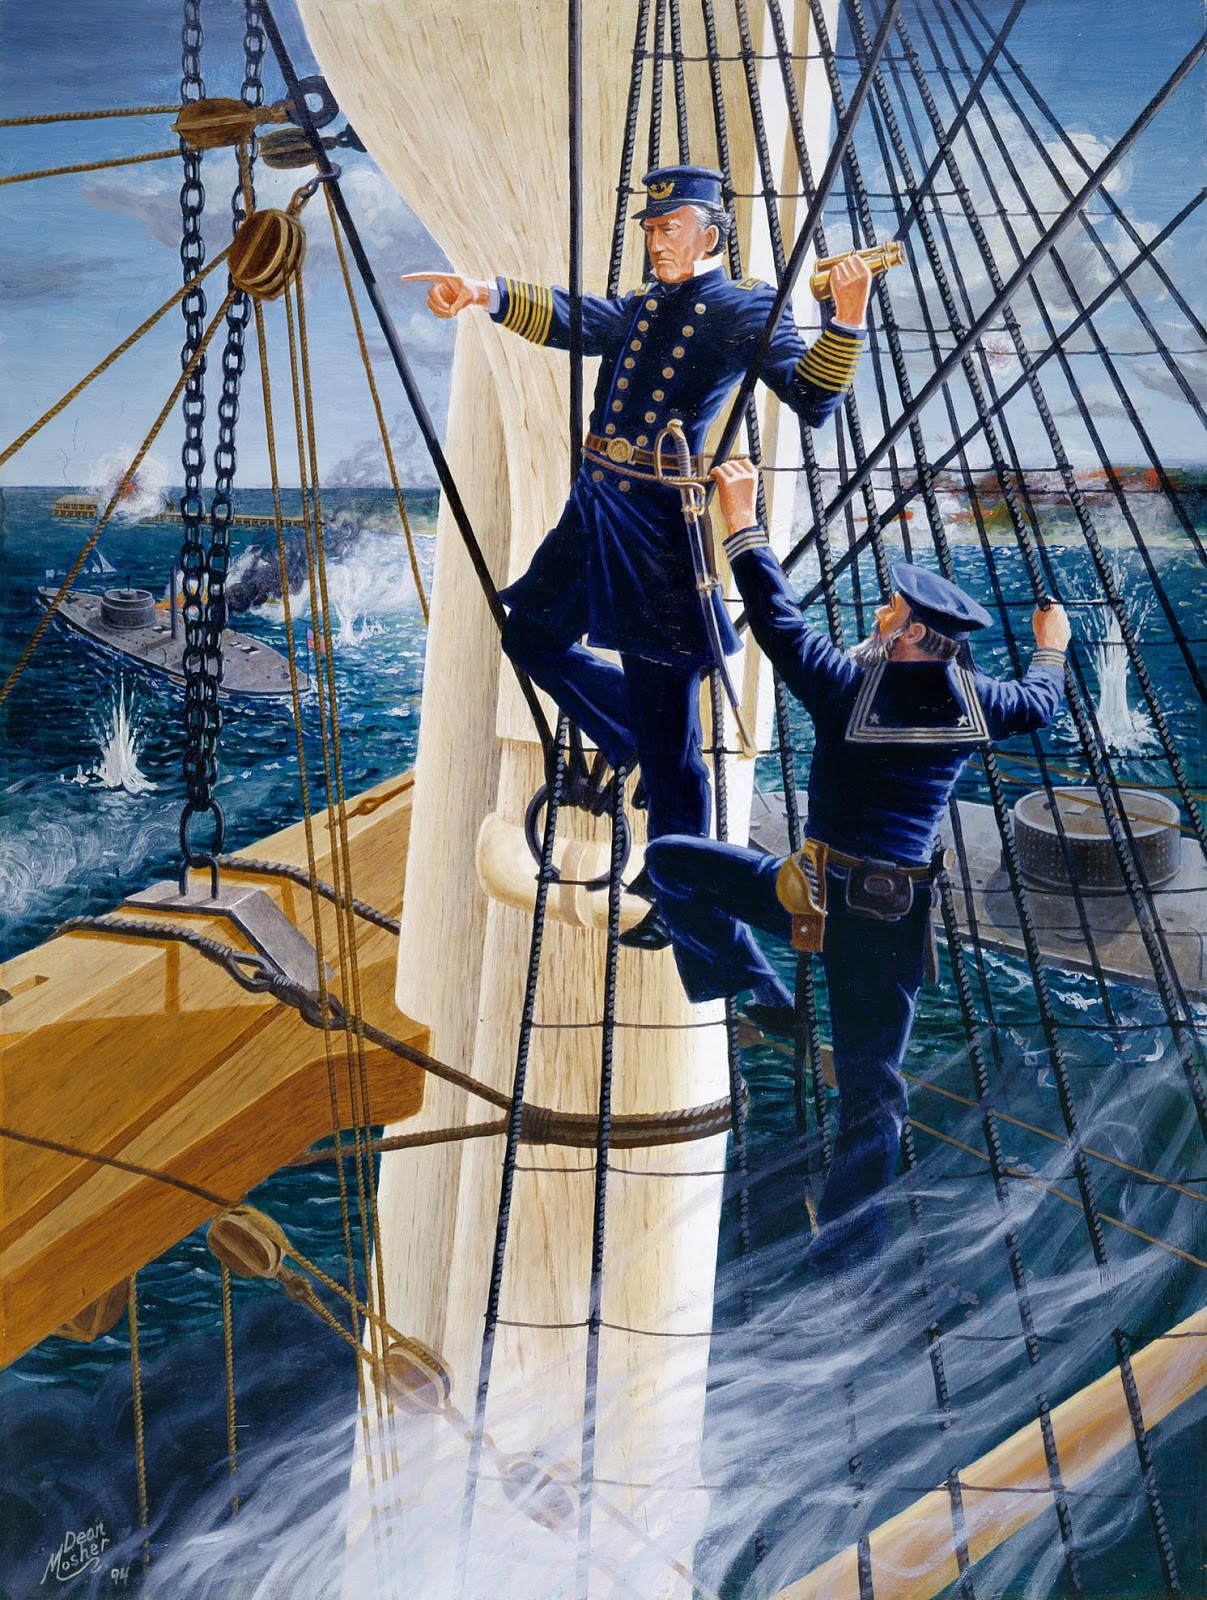 Г на палубе. Матрос 17 век парусный корабль. Люди и корабли. Моряки на паруснике. Моряки на корабле живопись.